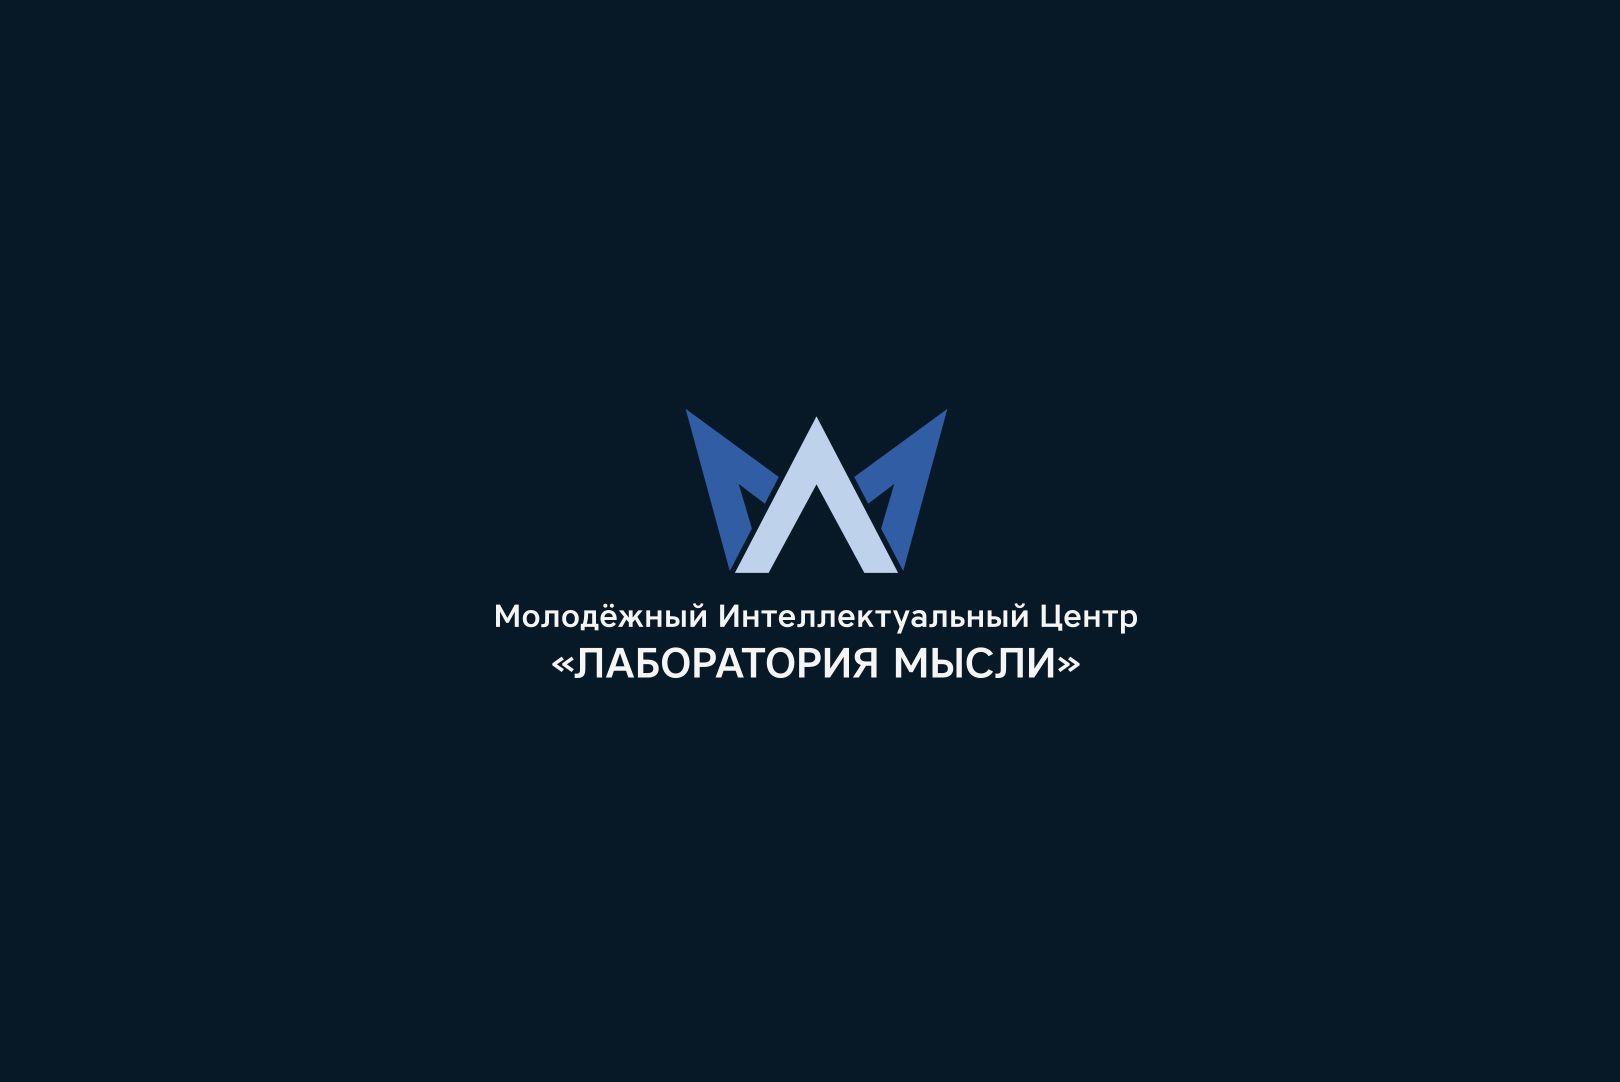 Мыслелаб! Логотип для интеллектуального центра - дизайнер U4po4mak